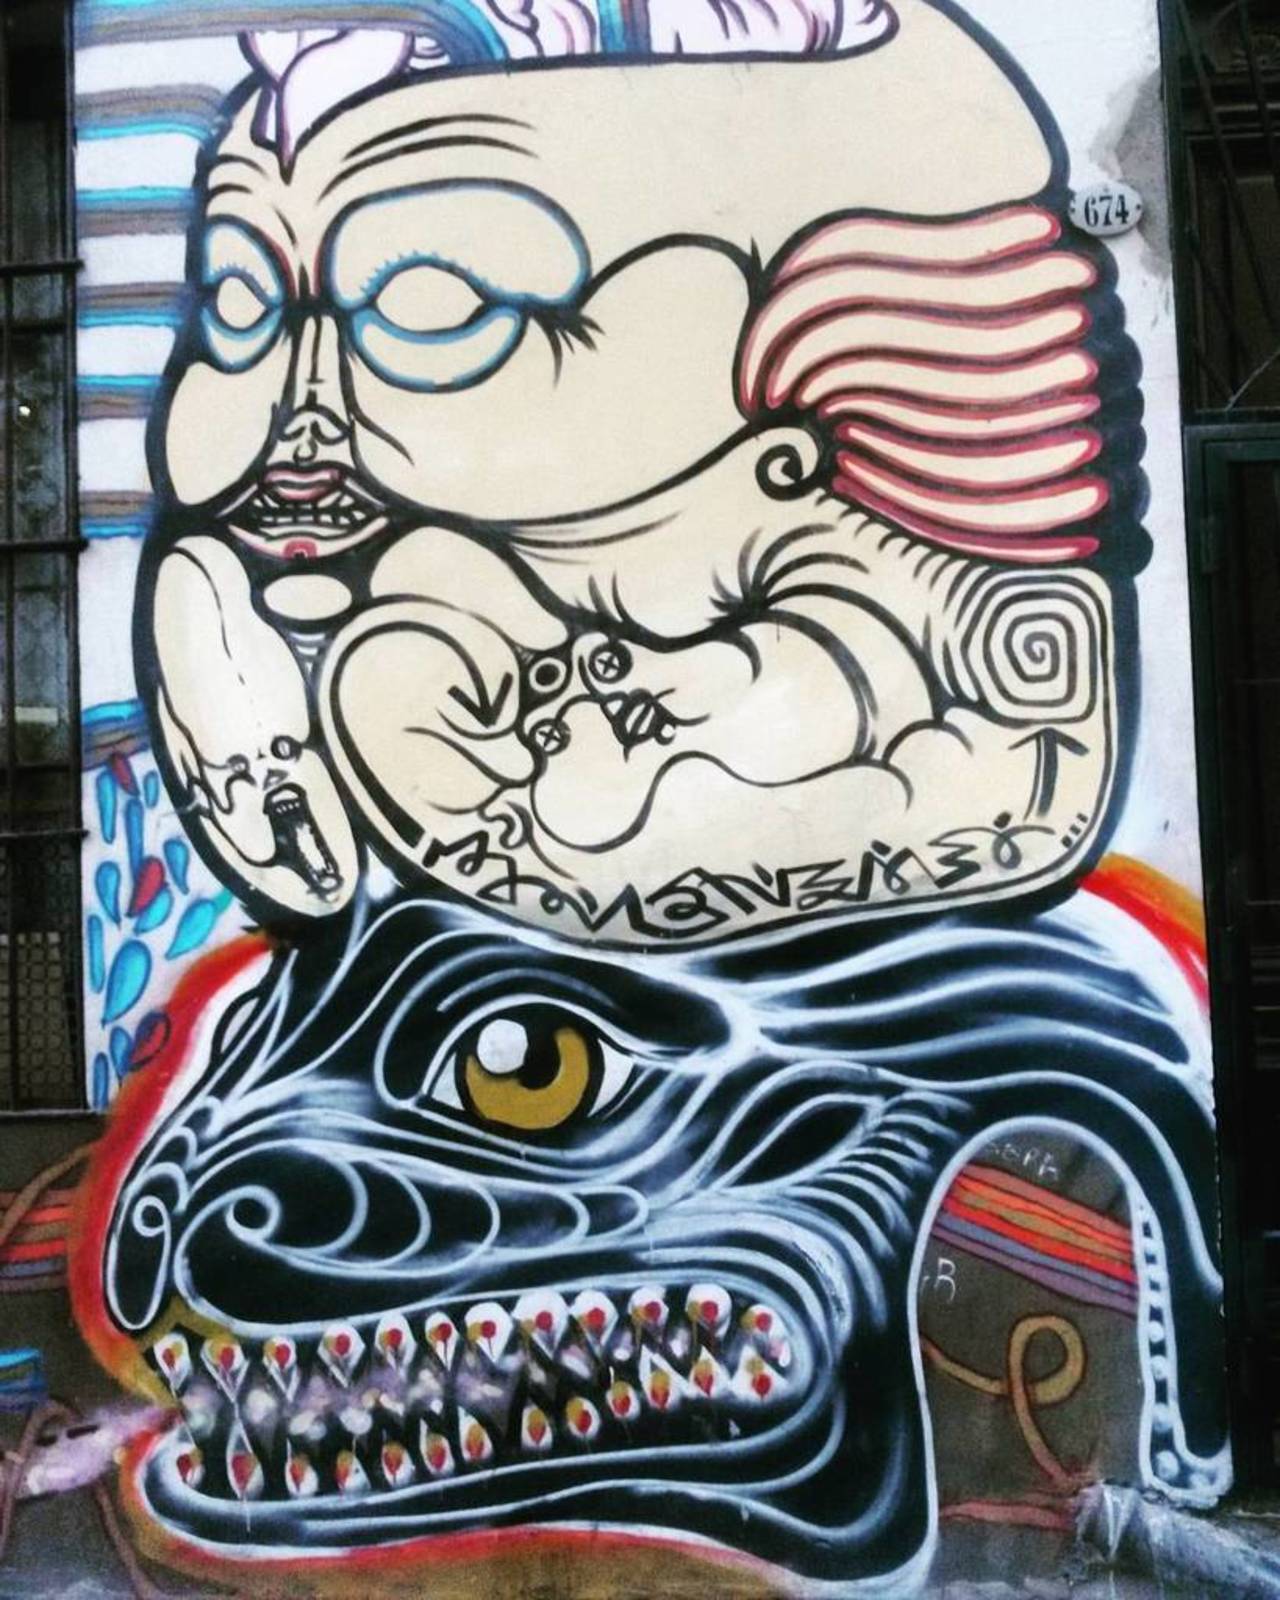 RT @artpushr: via #mcsvgnzky "http://bit.ly/1L9W1pF" #graffiti #streetart http://t.co/gRME8i2oCS